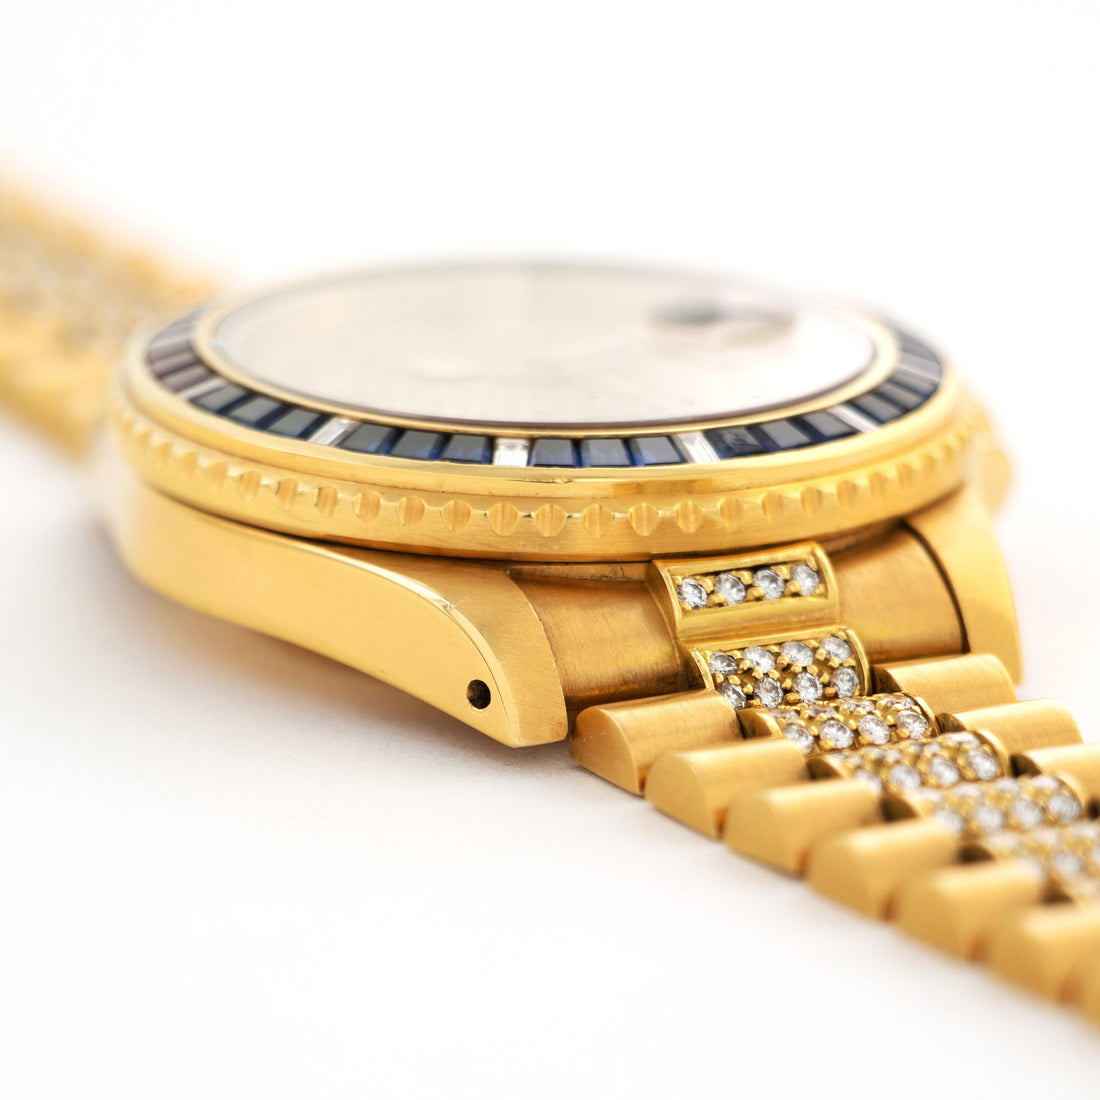 Rolex Yellow Gold GMT-Master Watch Ref. 16758 SARU